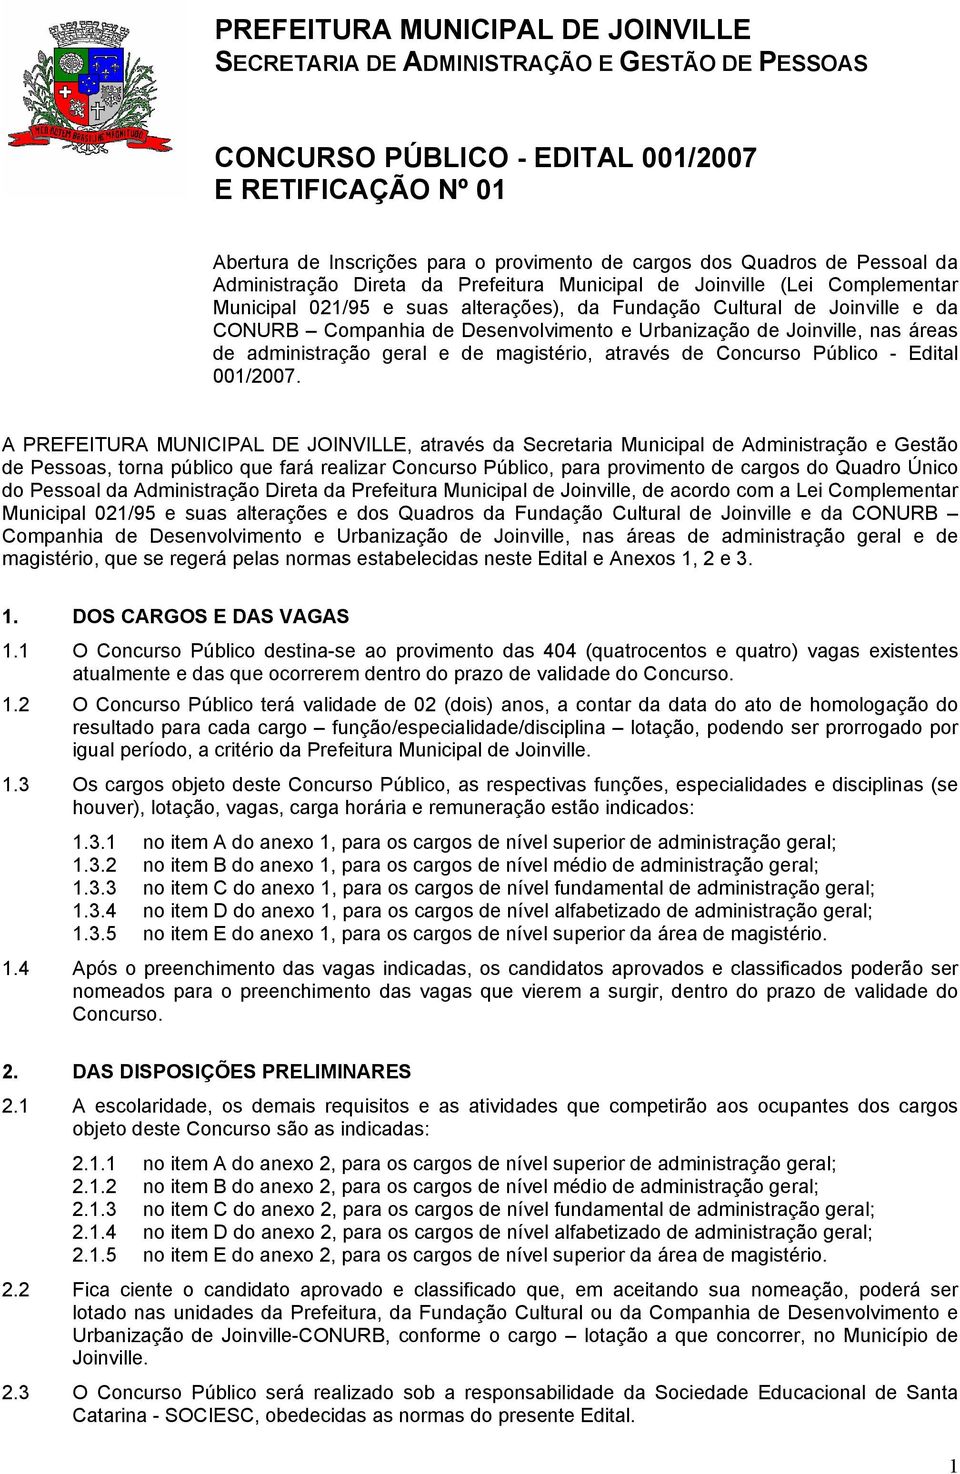 Desenvolvimento e Urbanização de Joinville, nas áreas de administração geral e de magistério, através de Concurso Público - Edital 001/2007.